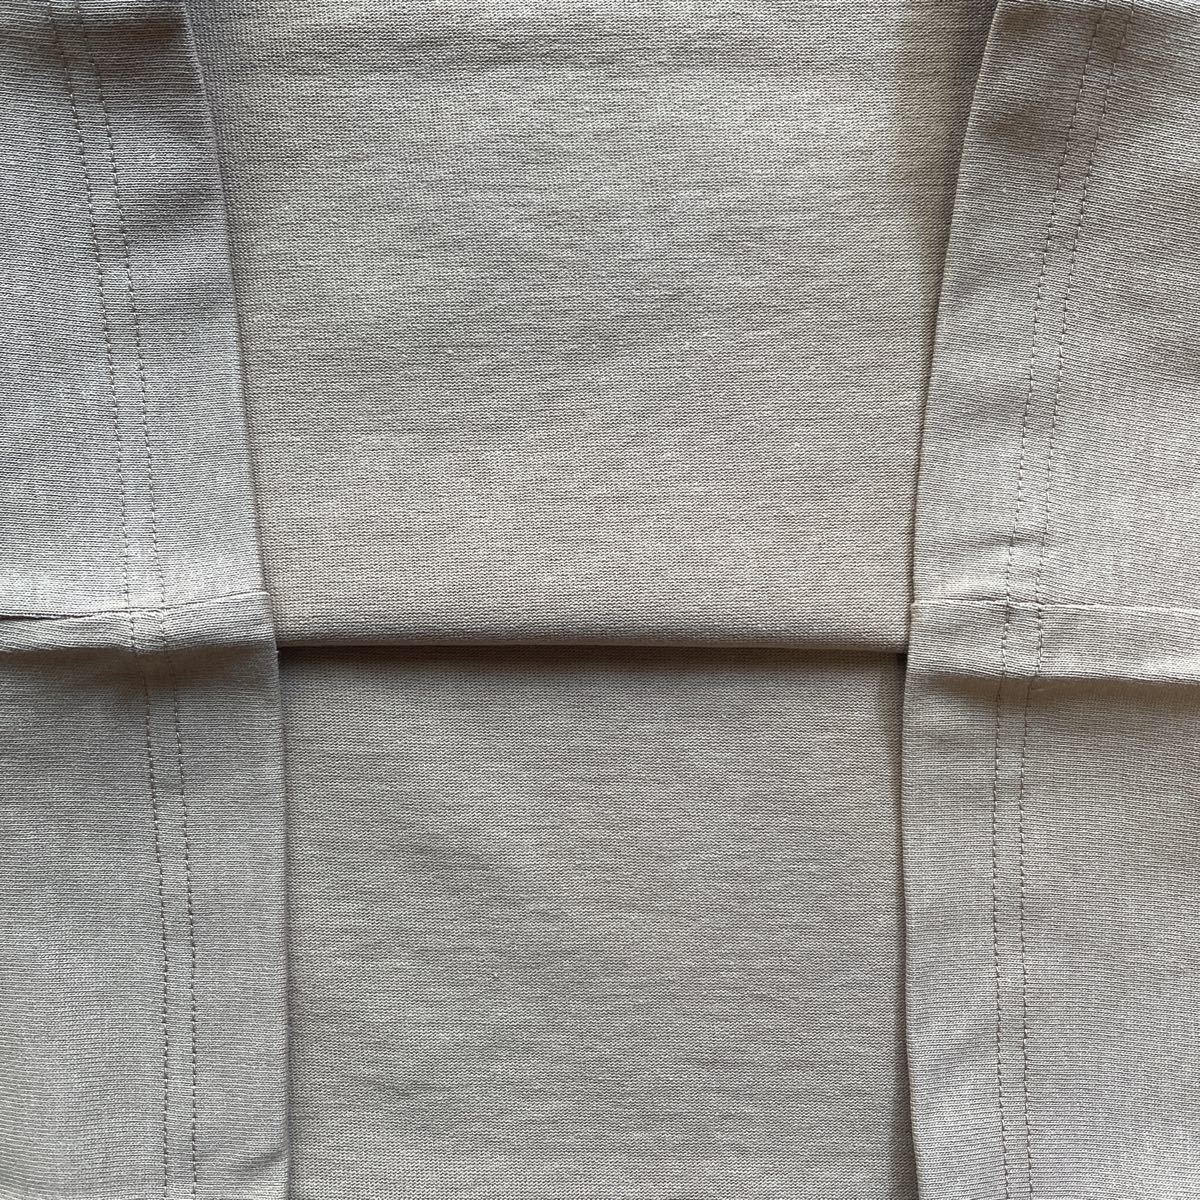 送料無料the HOUSEザ.ハウス限定MENS上質コットン100%Tシャツ吸水速乾柔らか通気性STRETCHシンプルDesign beige(半額以下5)新品